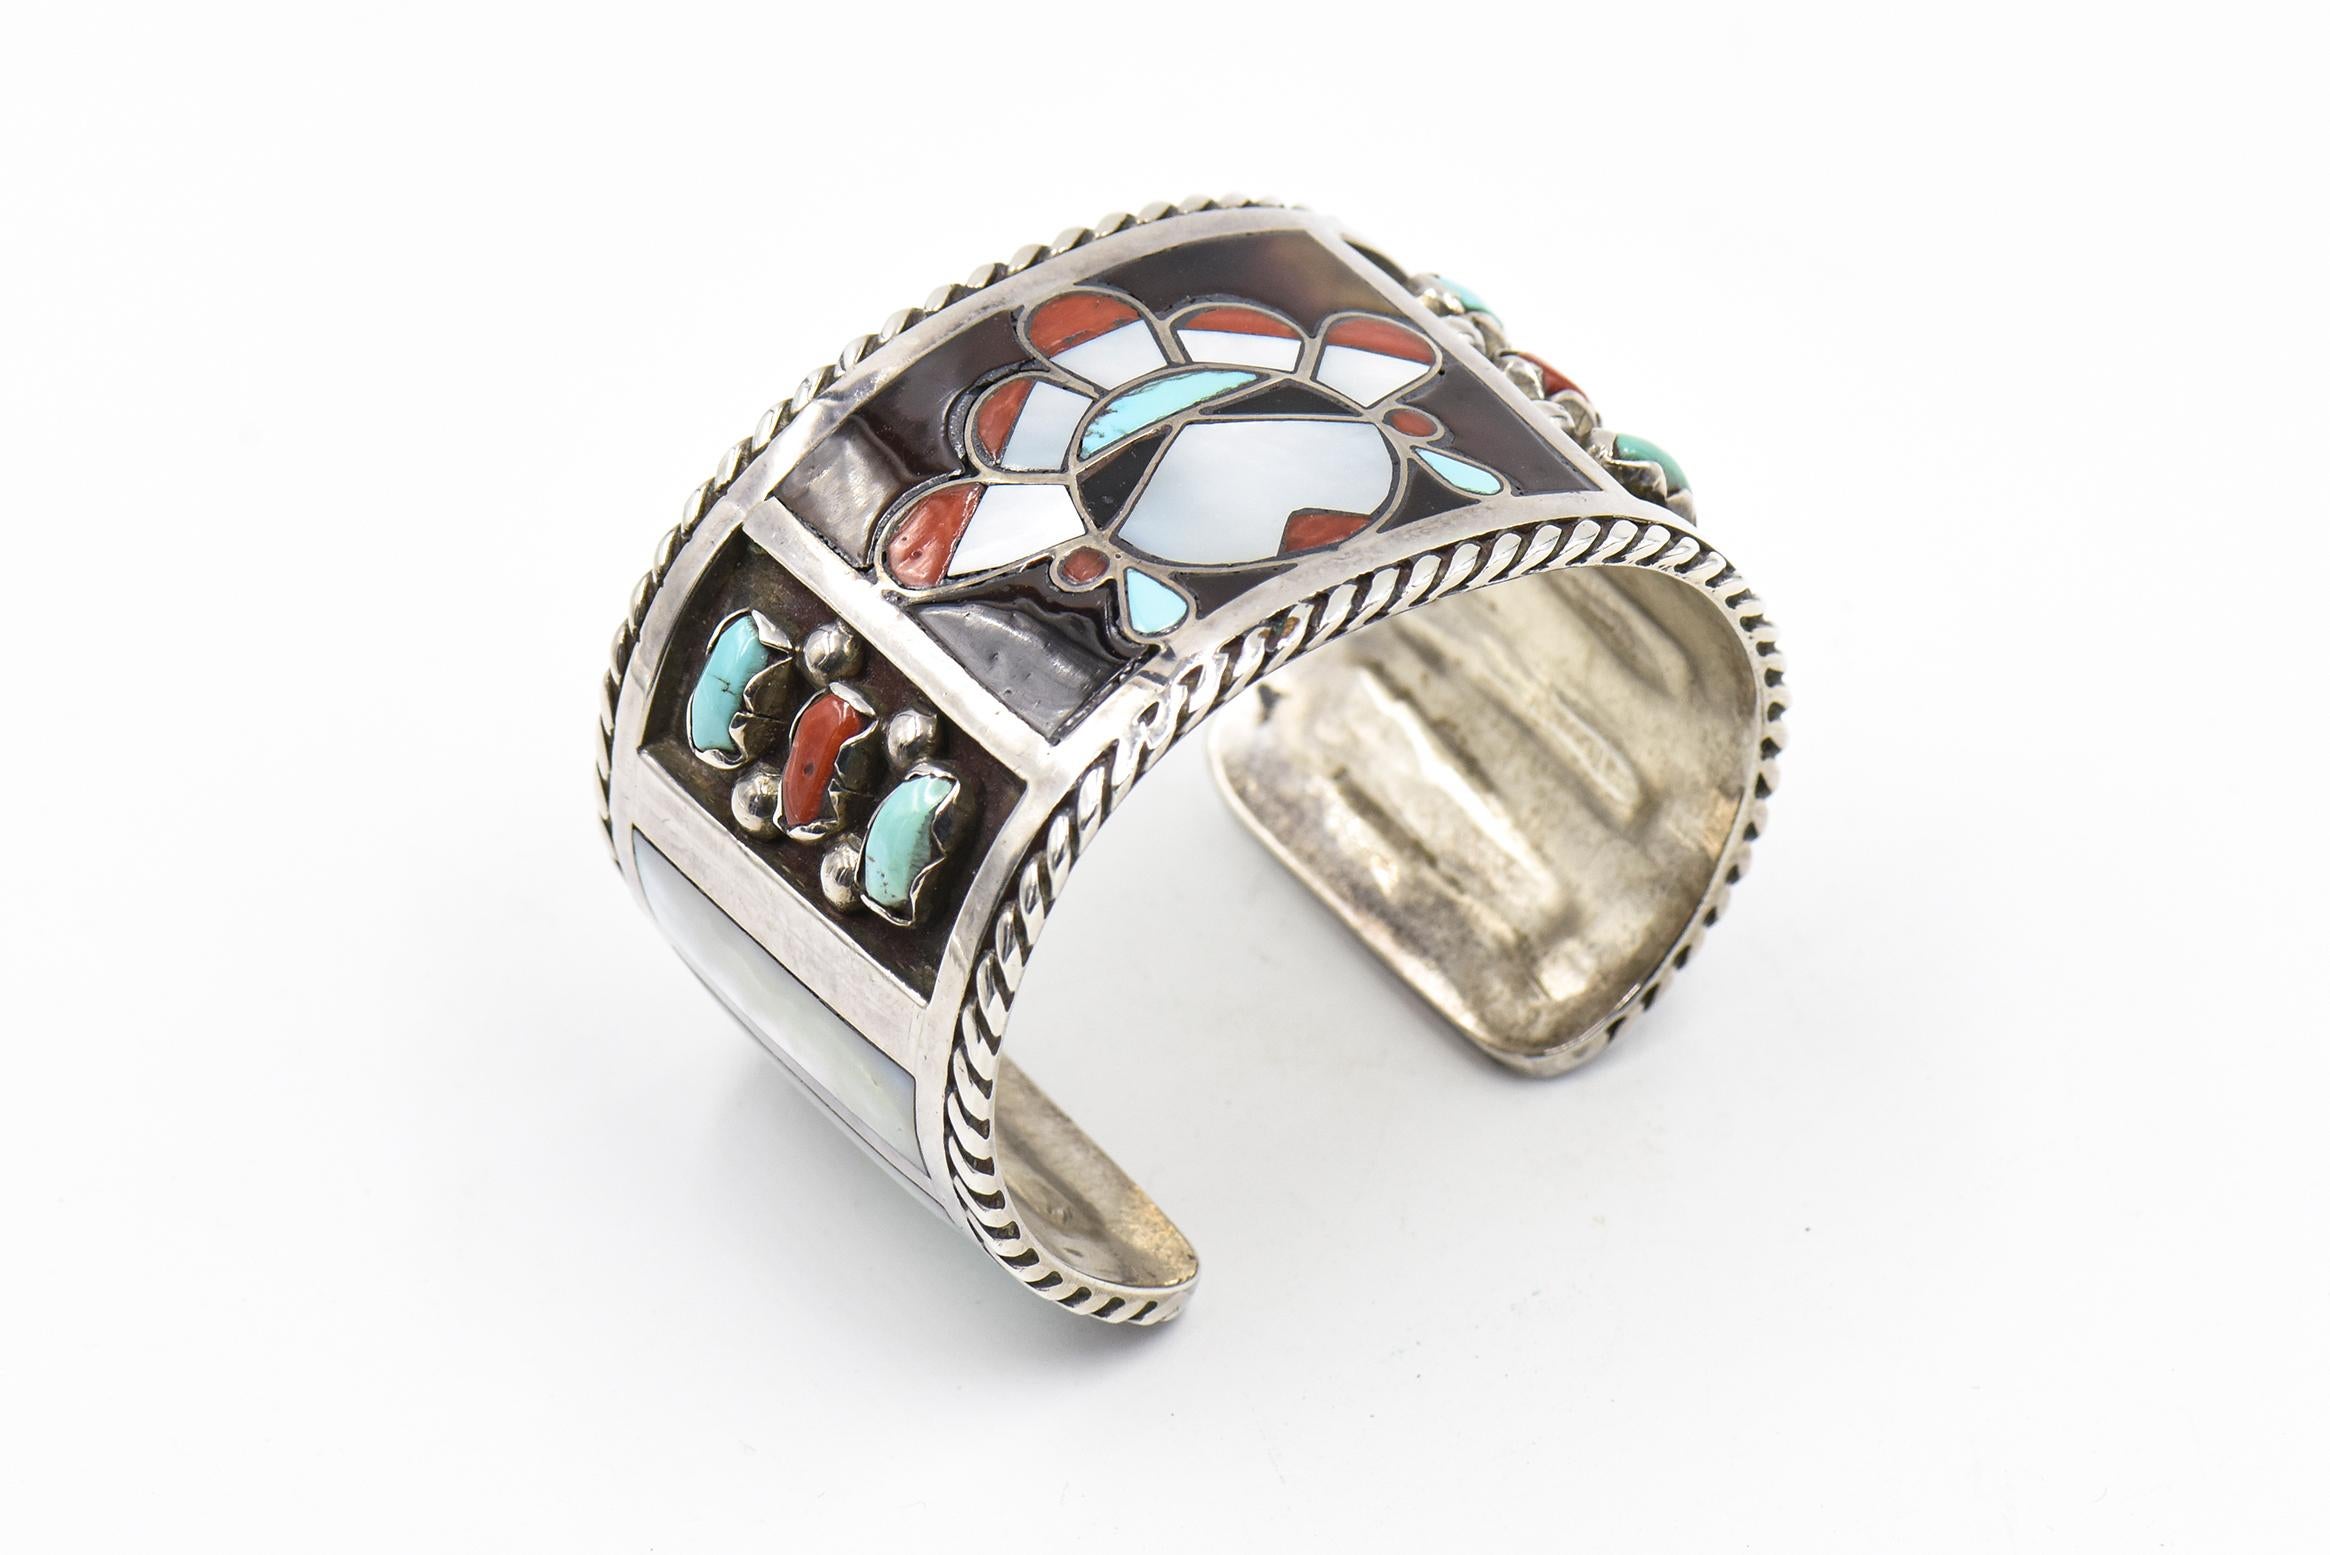 Ce magnifique bracelet est l'œuvre des artistes Zuni Filbert et Clara Gasper.  Circa 1960 - 1970.  Le bracelet est en argent sterling avec des incrustations de turquoise, de nacre et de corail.  Au centre se trouve un visage incrusté et sur les